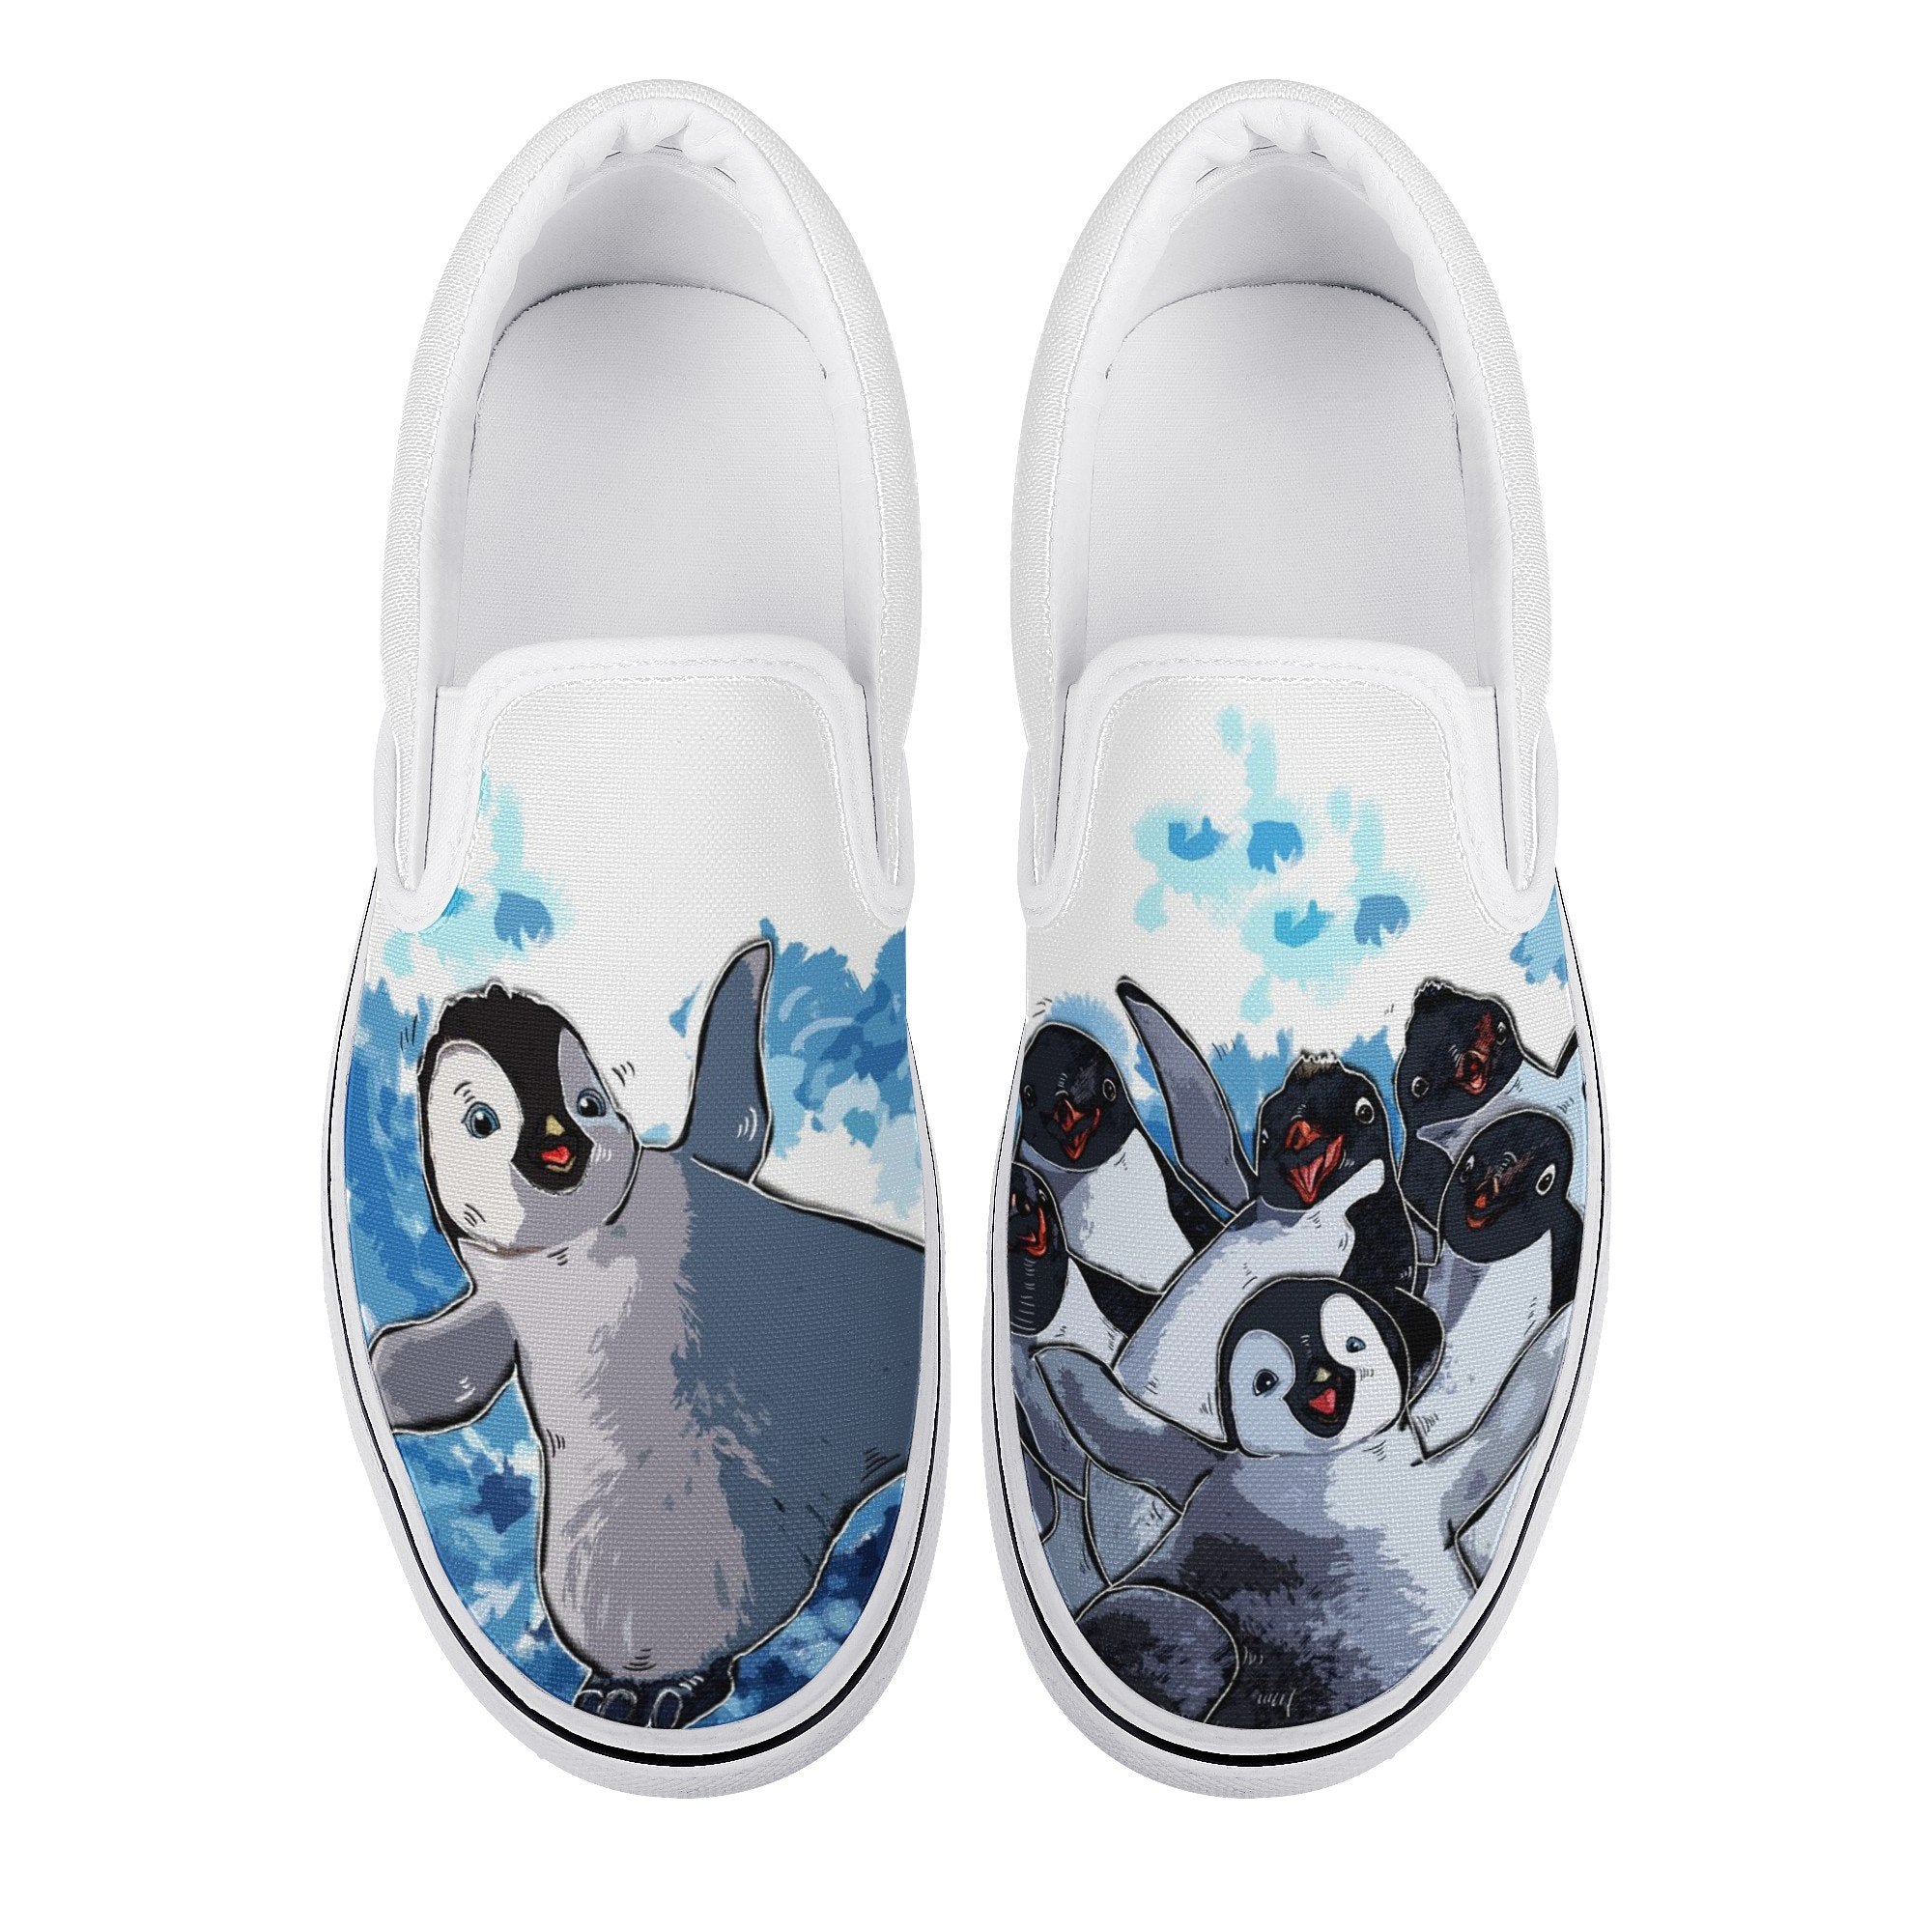 Penguin Island Custom Vans Slip On Shoes